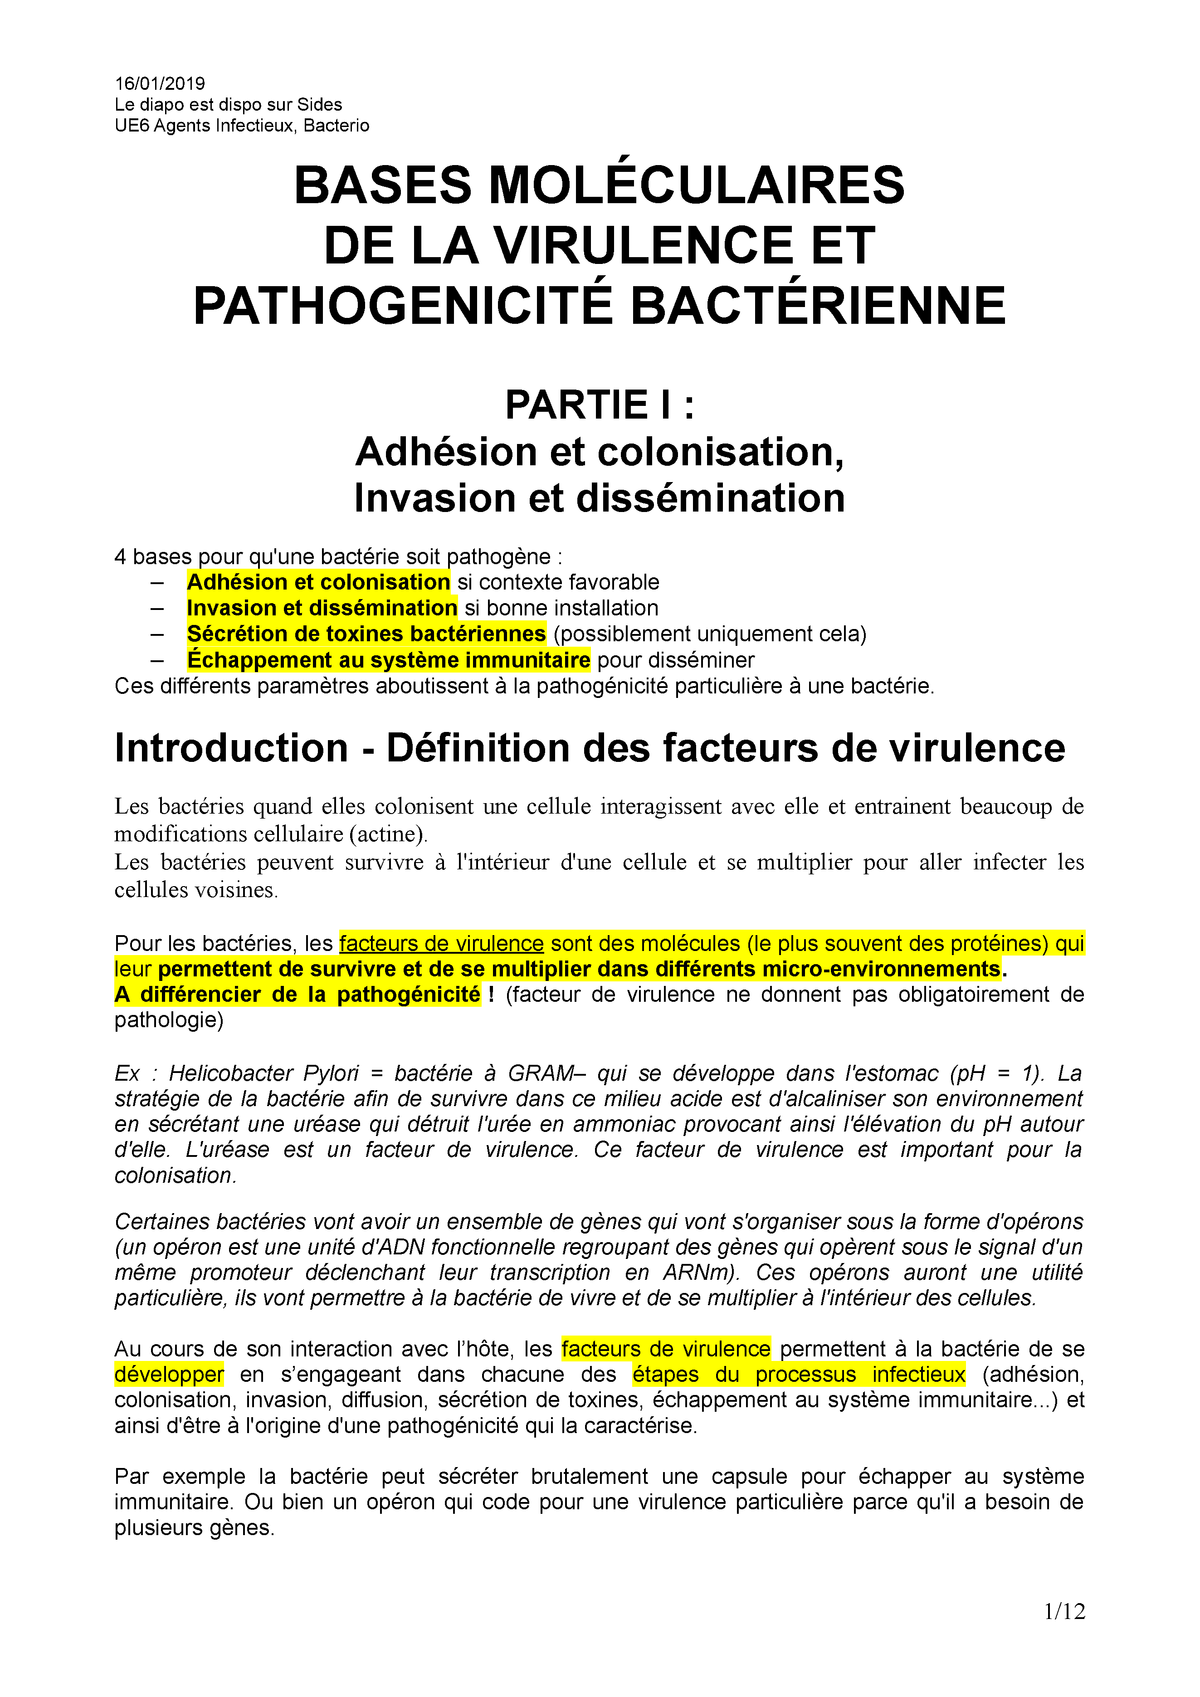 M3 Infect Bases Moleculaires De La Virulence Bacterienne Partie 1 Studocu